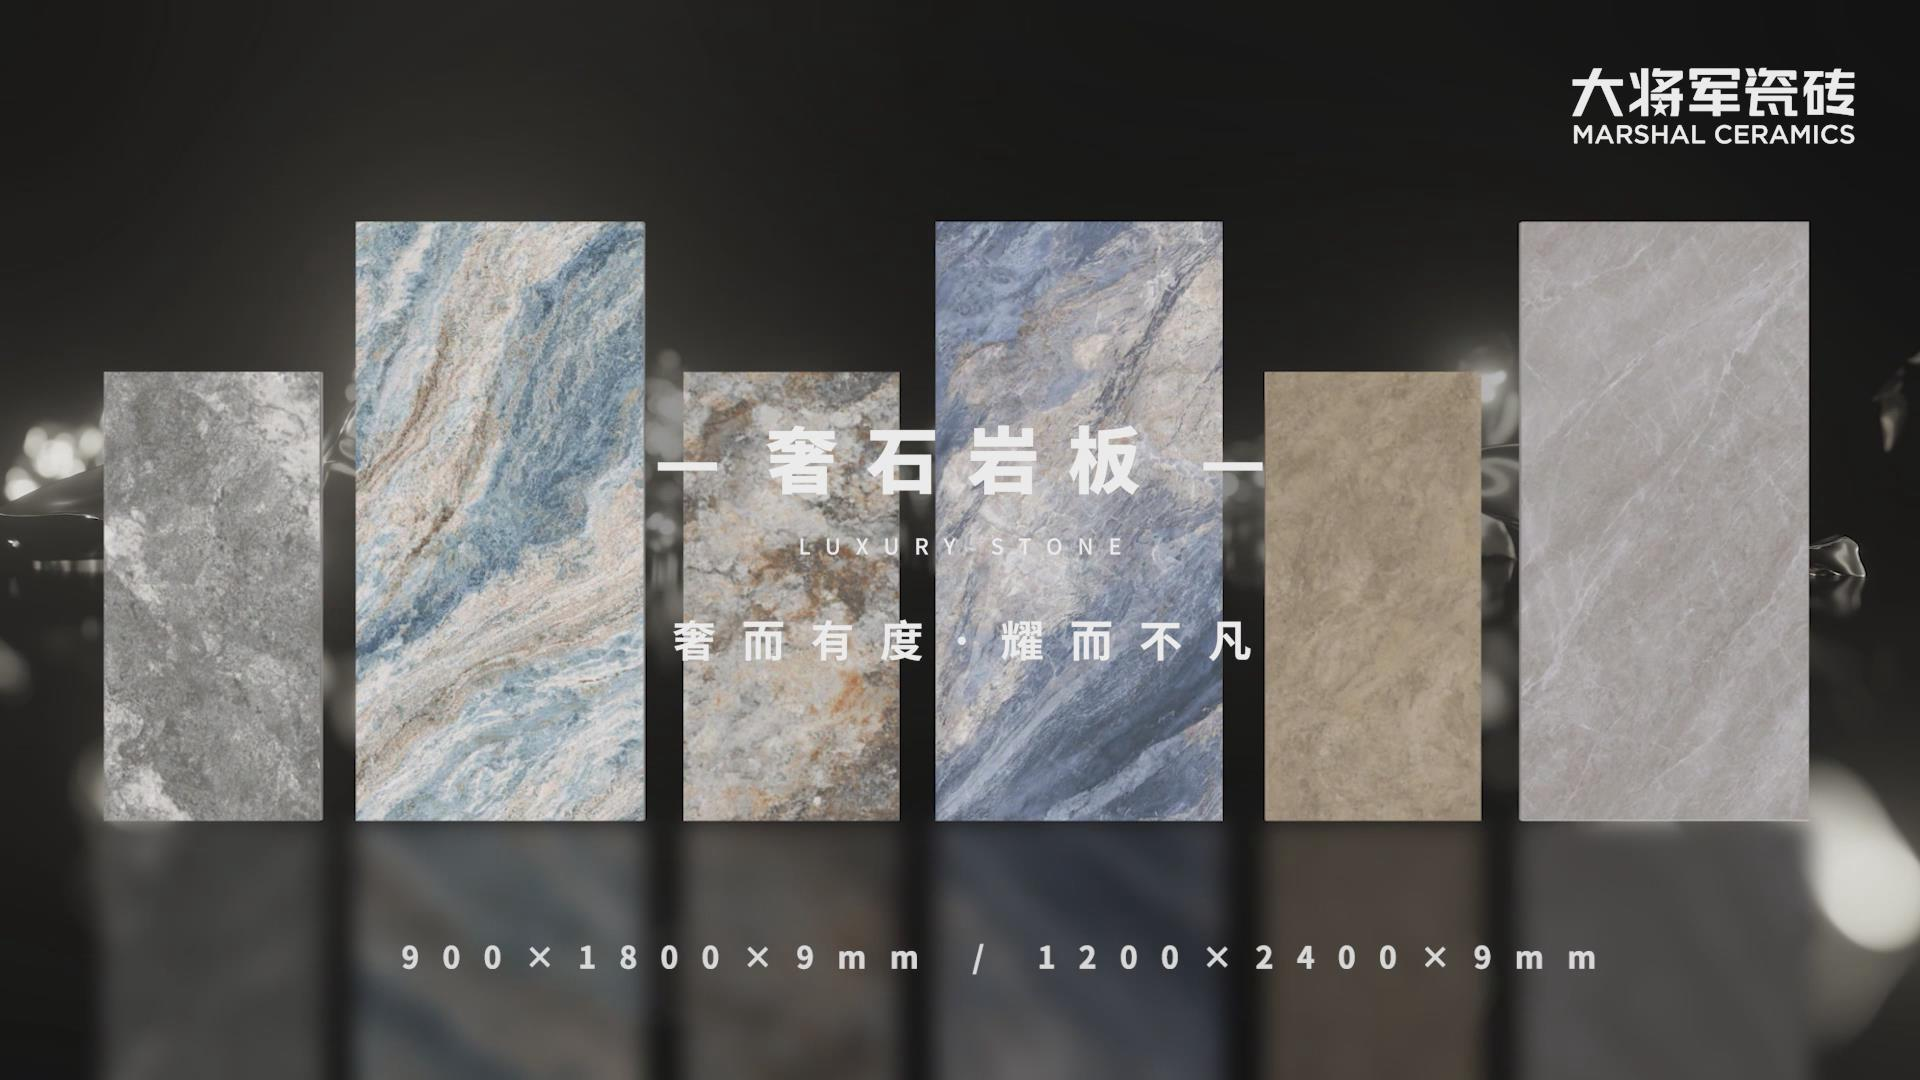 大米乐m6
米乐m6
-奢石岩板系列产品视频